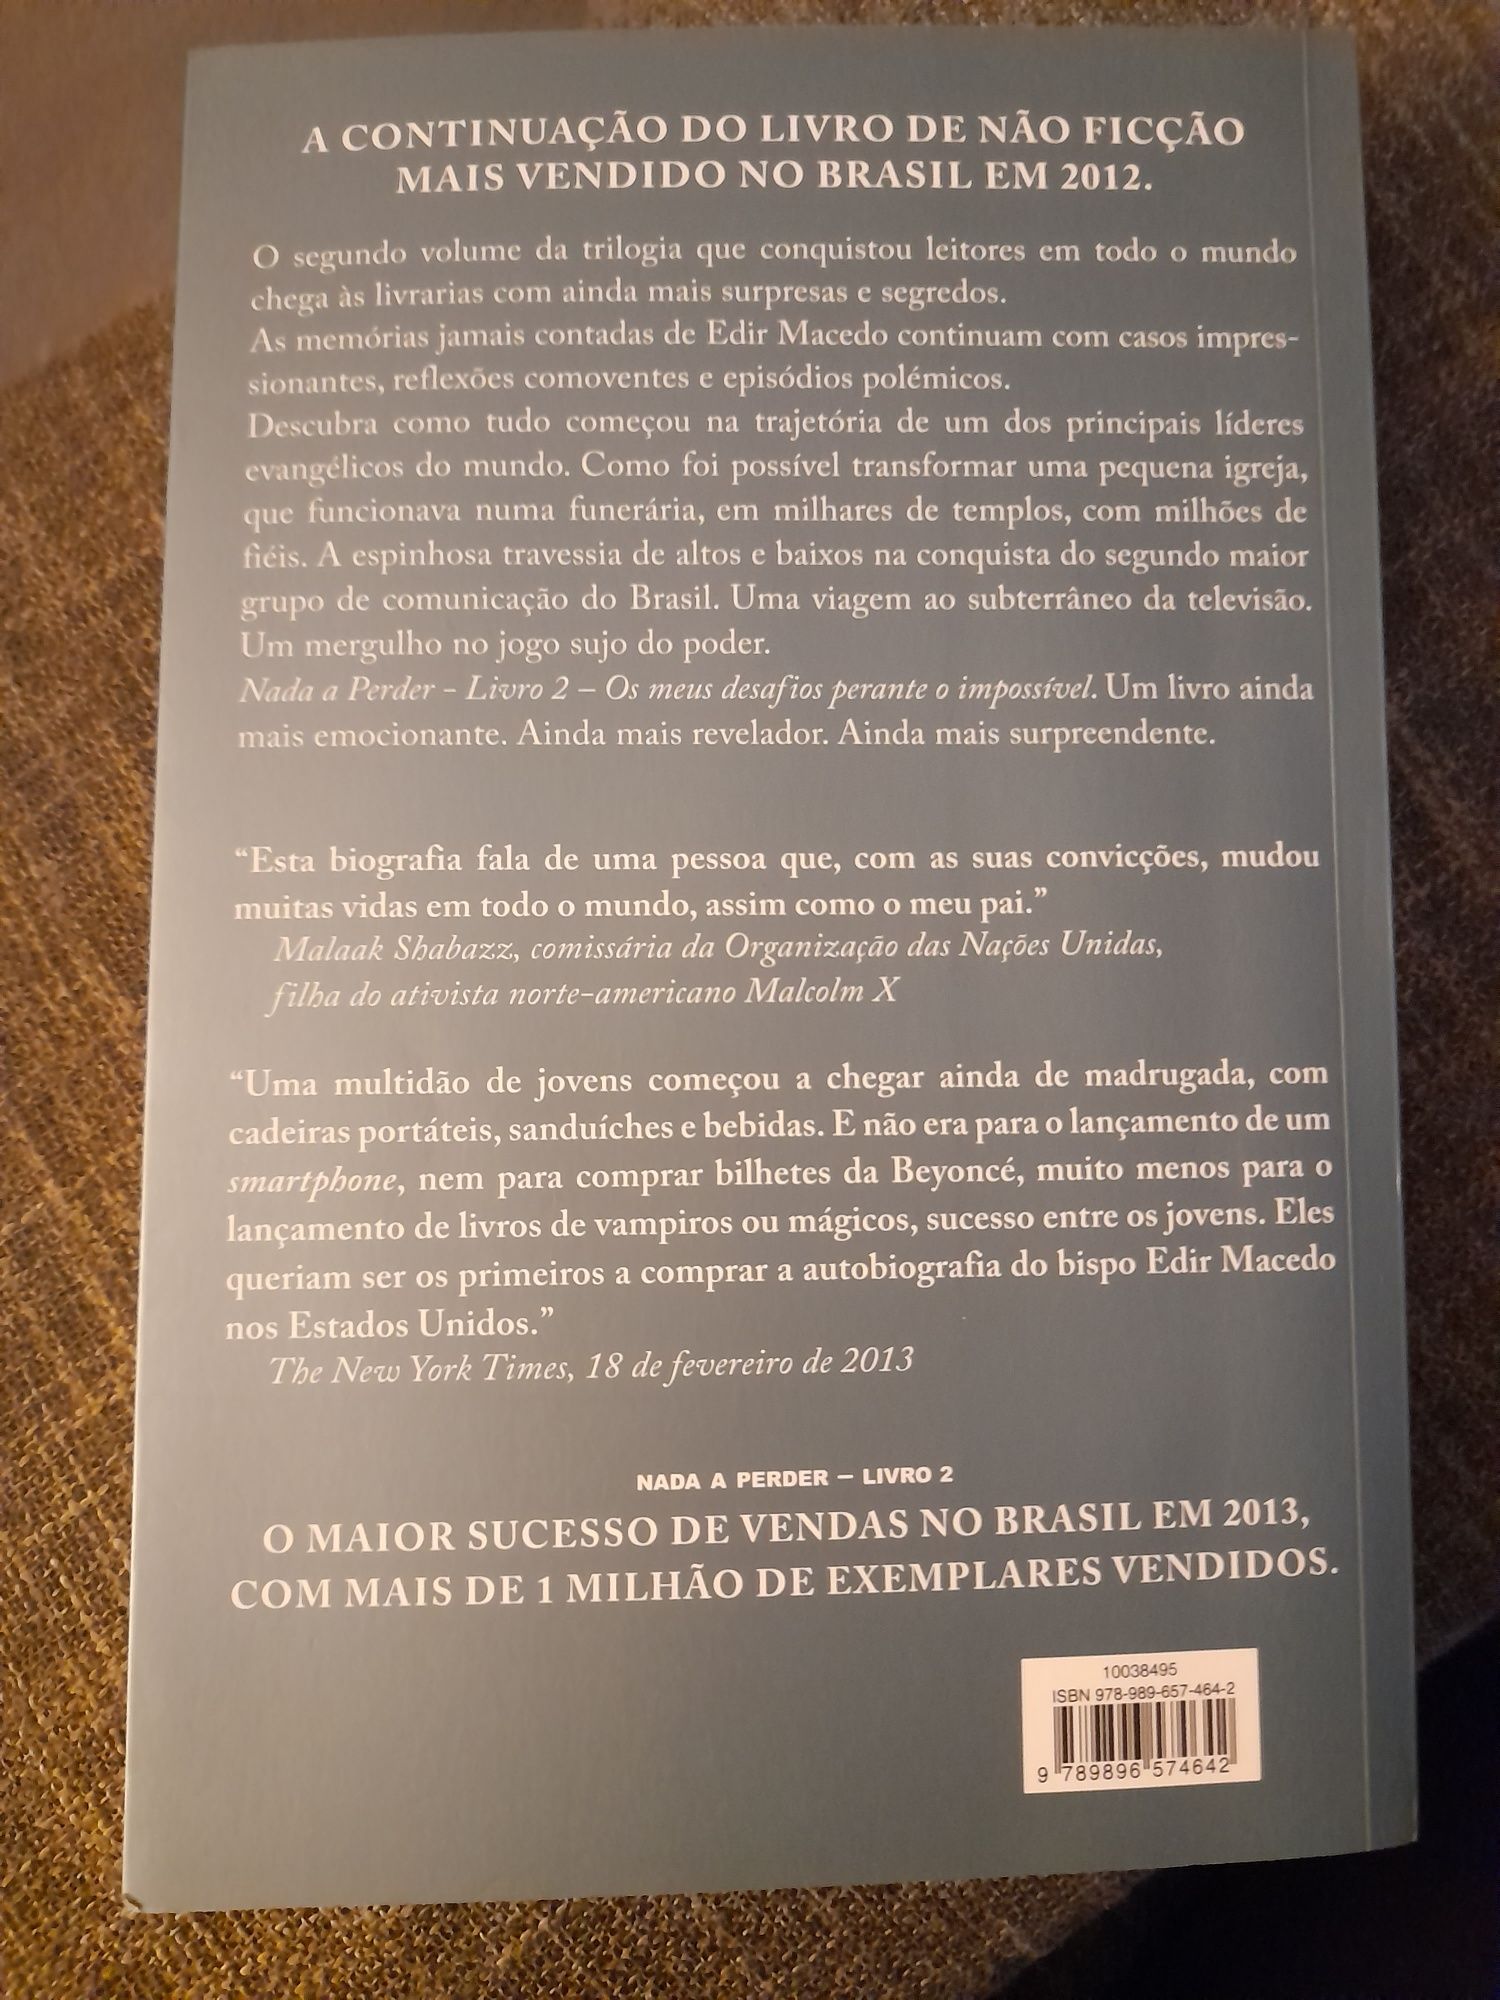 Livros - Nada a Perder, A Minha Biografia, Volume 1 e 2